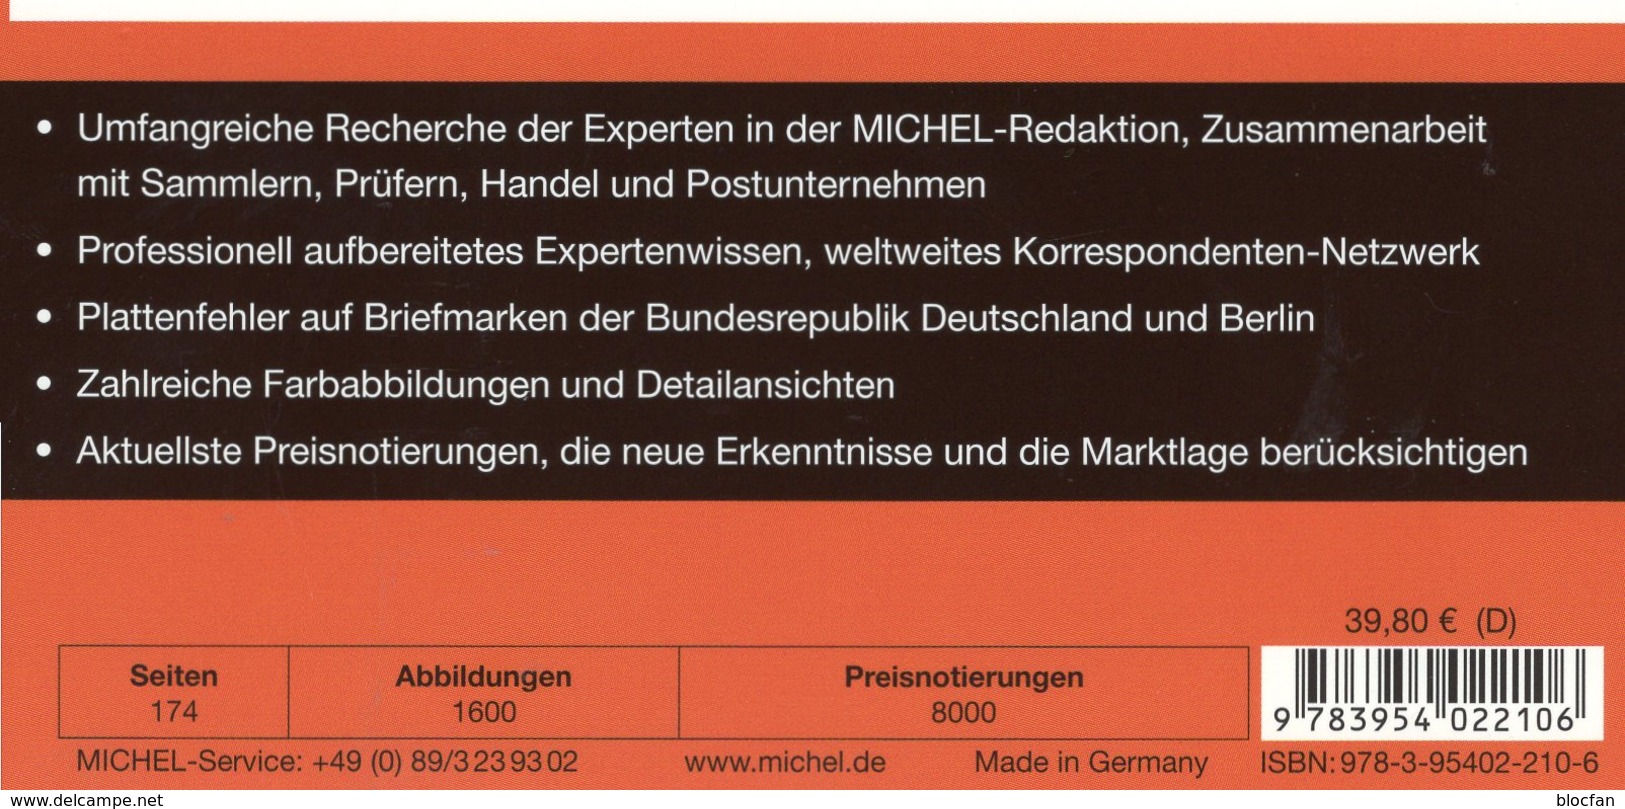 MICHEL Plattenfehler BUND Berlin New 2018 40€ Spezial-Katalog Fehler Auf Briefmarken Error Stamps Catalogue Germany - Deutschland